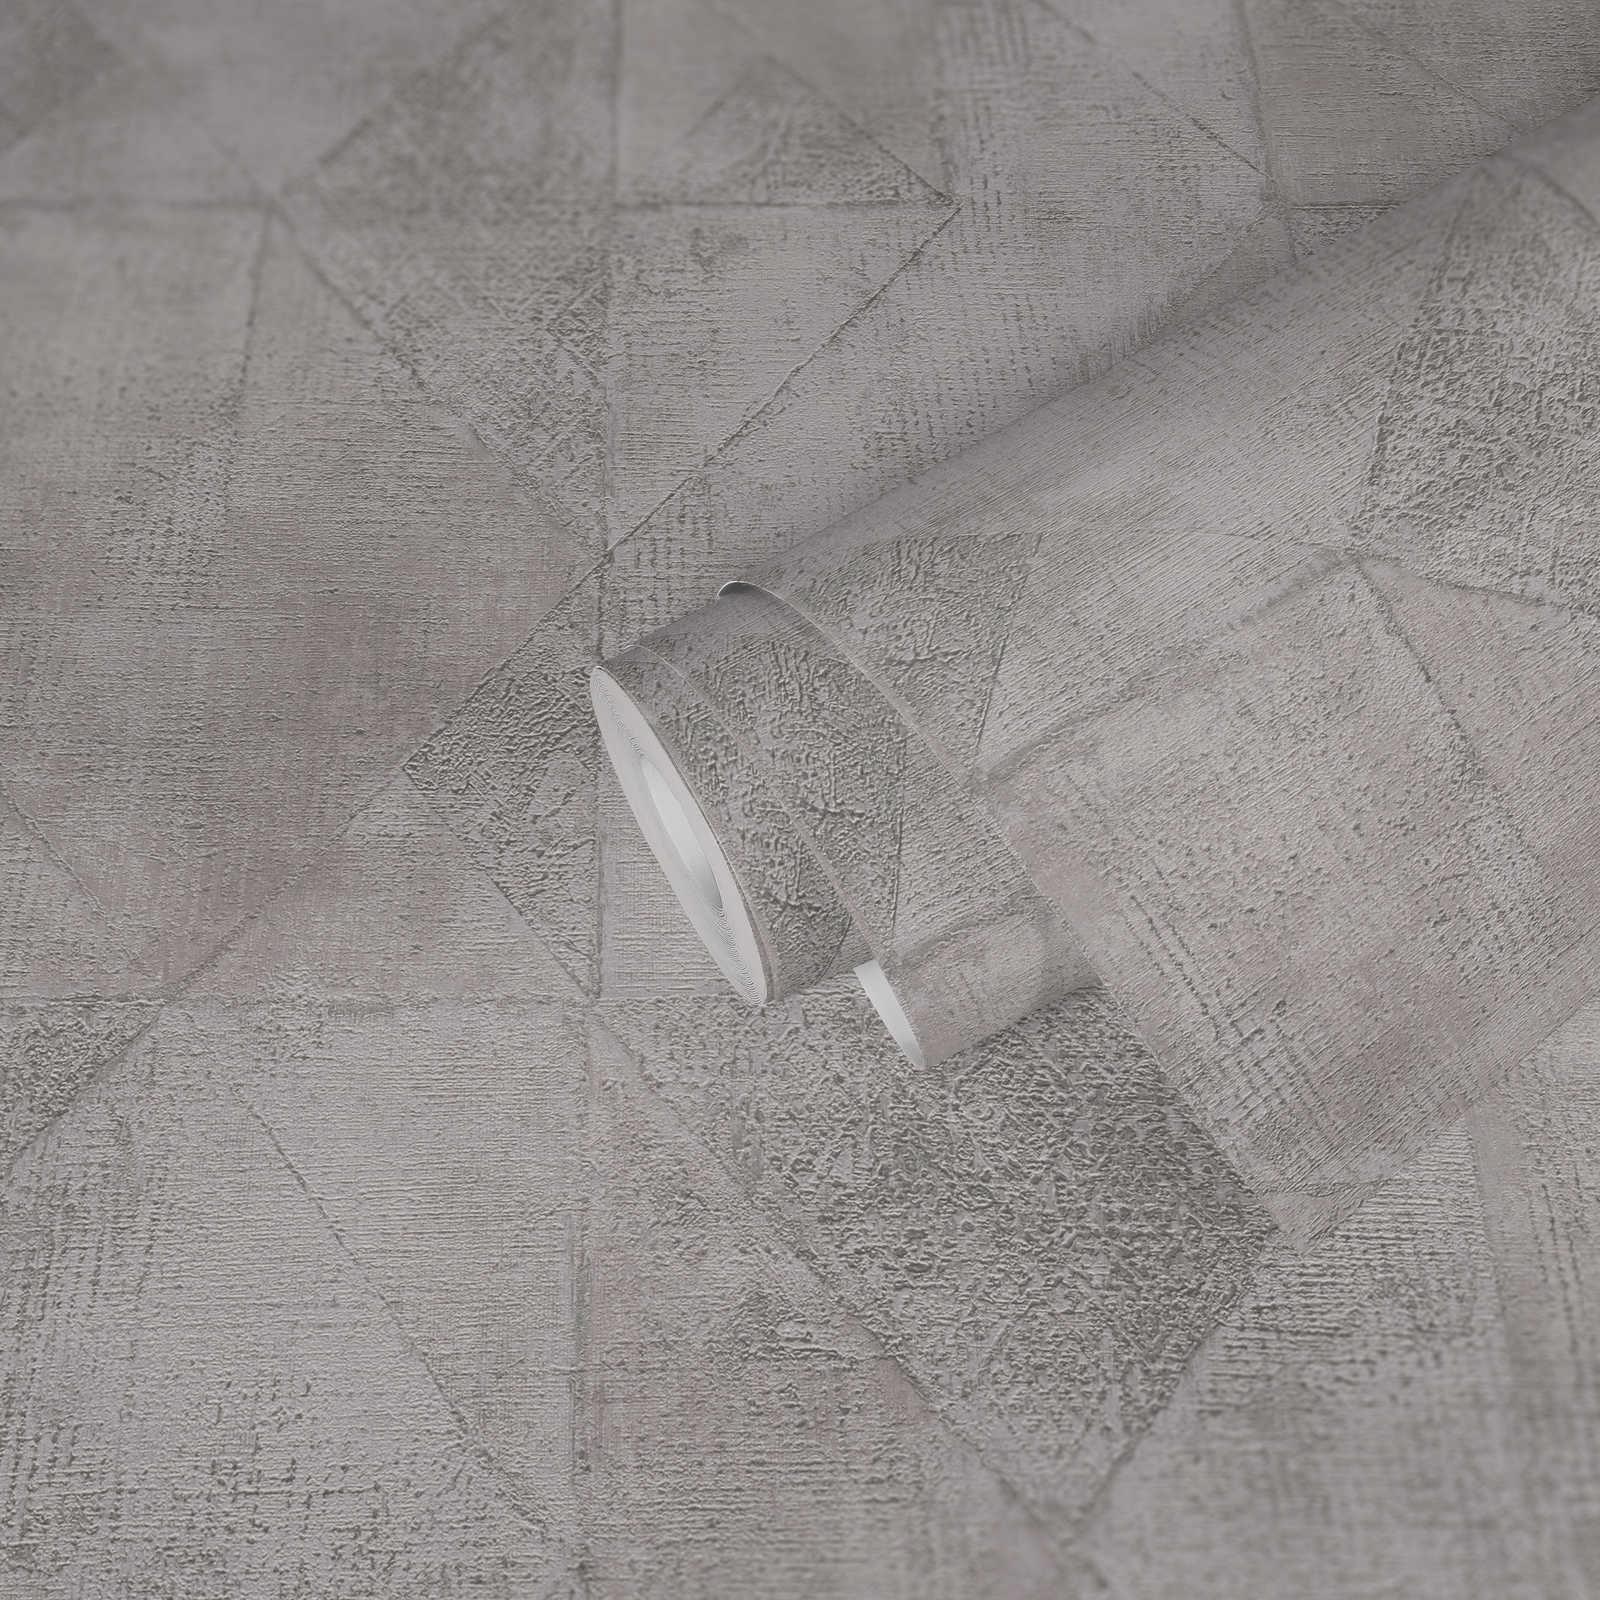             Carta da parati con motivo grafico a triangoli con texture lucida metallizzata - grigio, argento
        